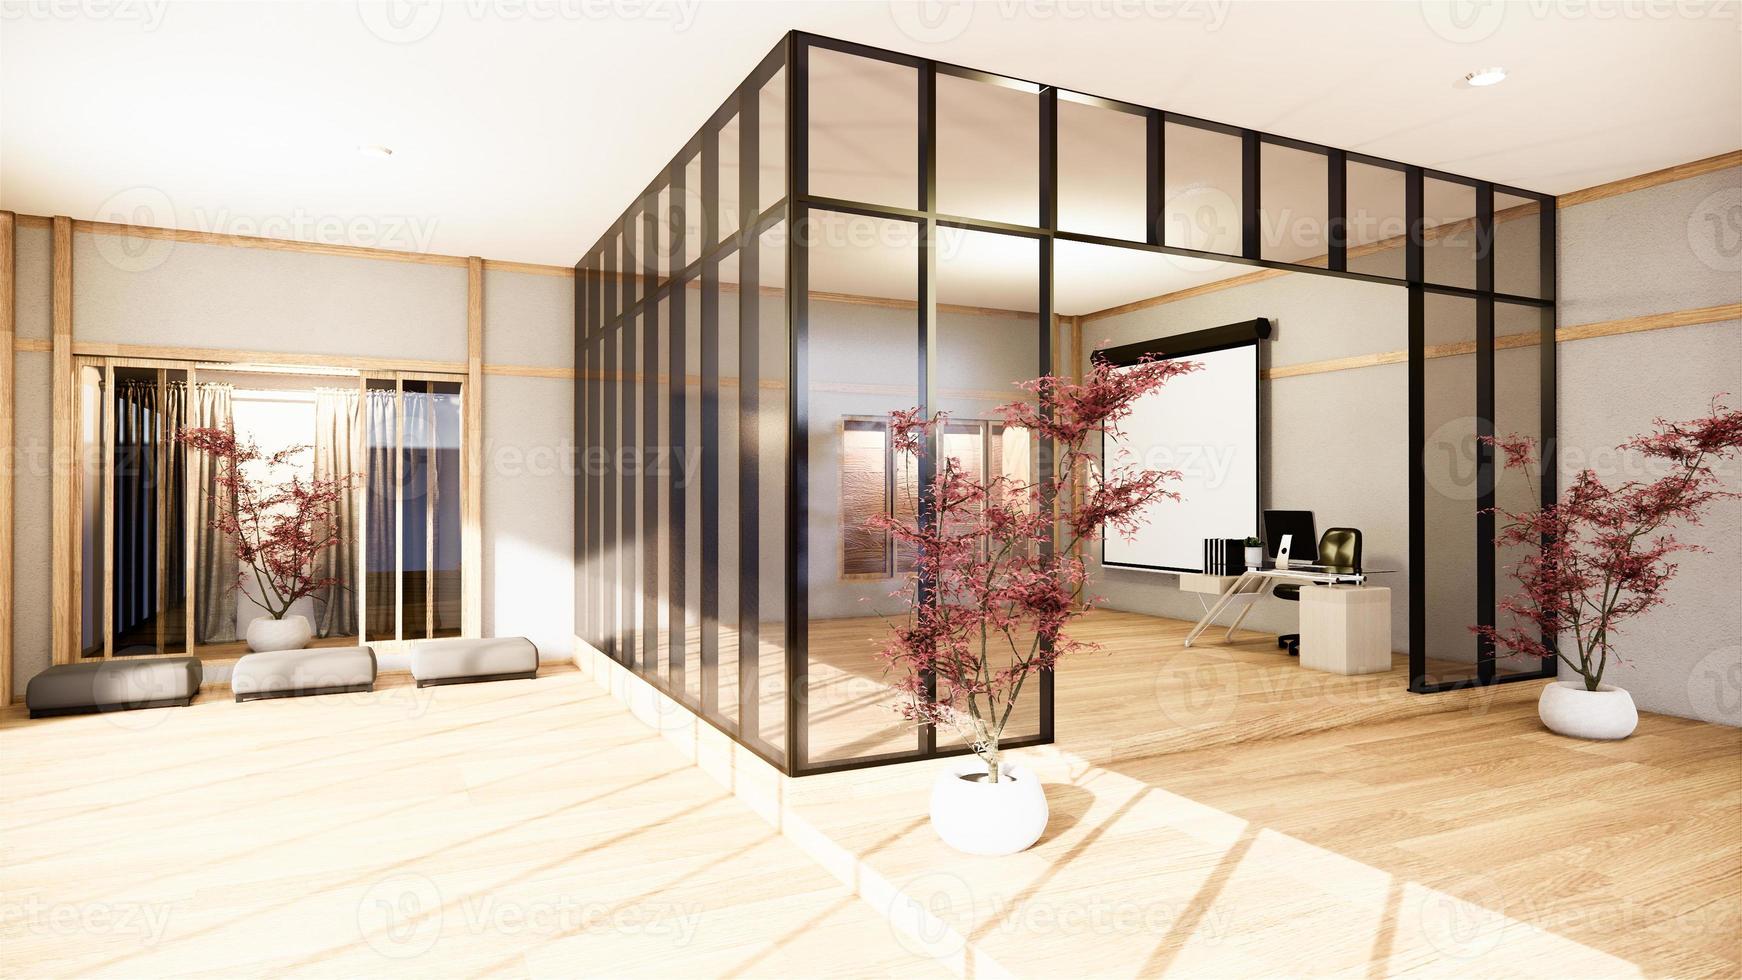 entreprise de bureau - belle salle de réunion et table de conférence au Japon, style moderne. rendu 3D photo